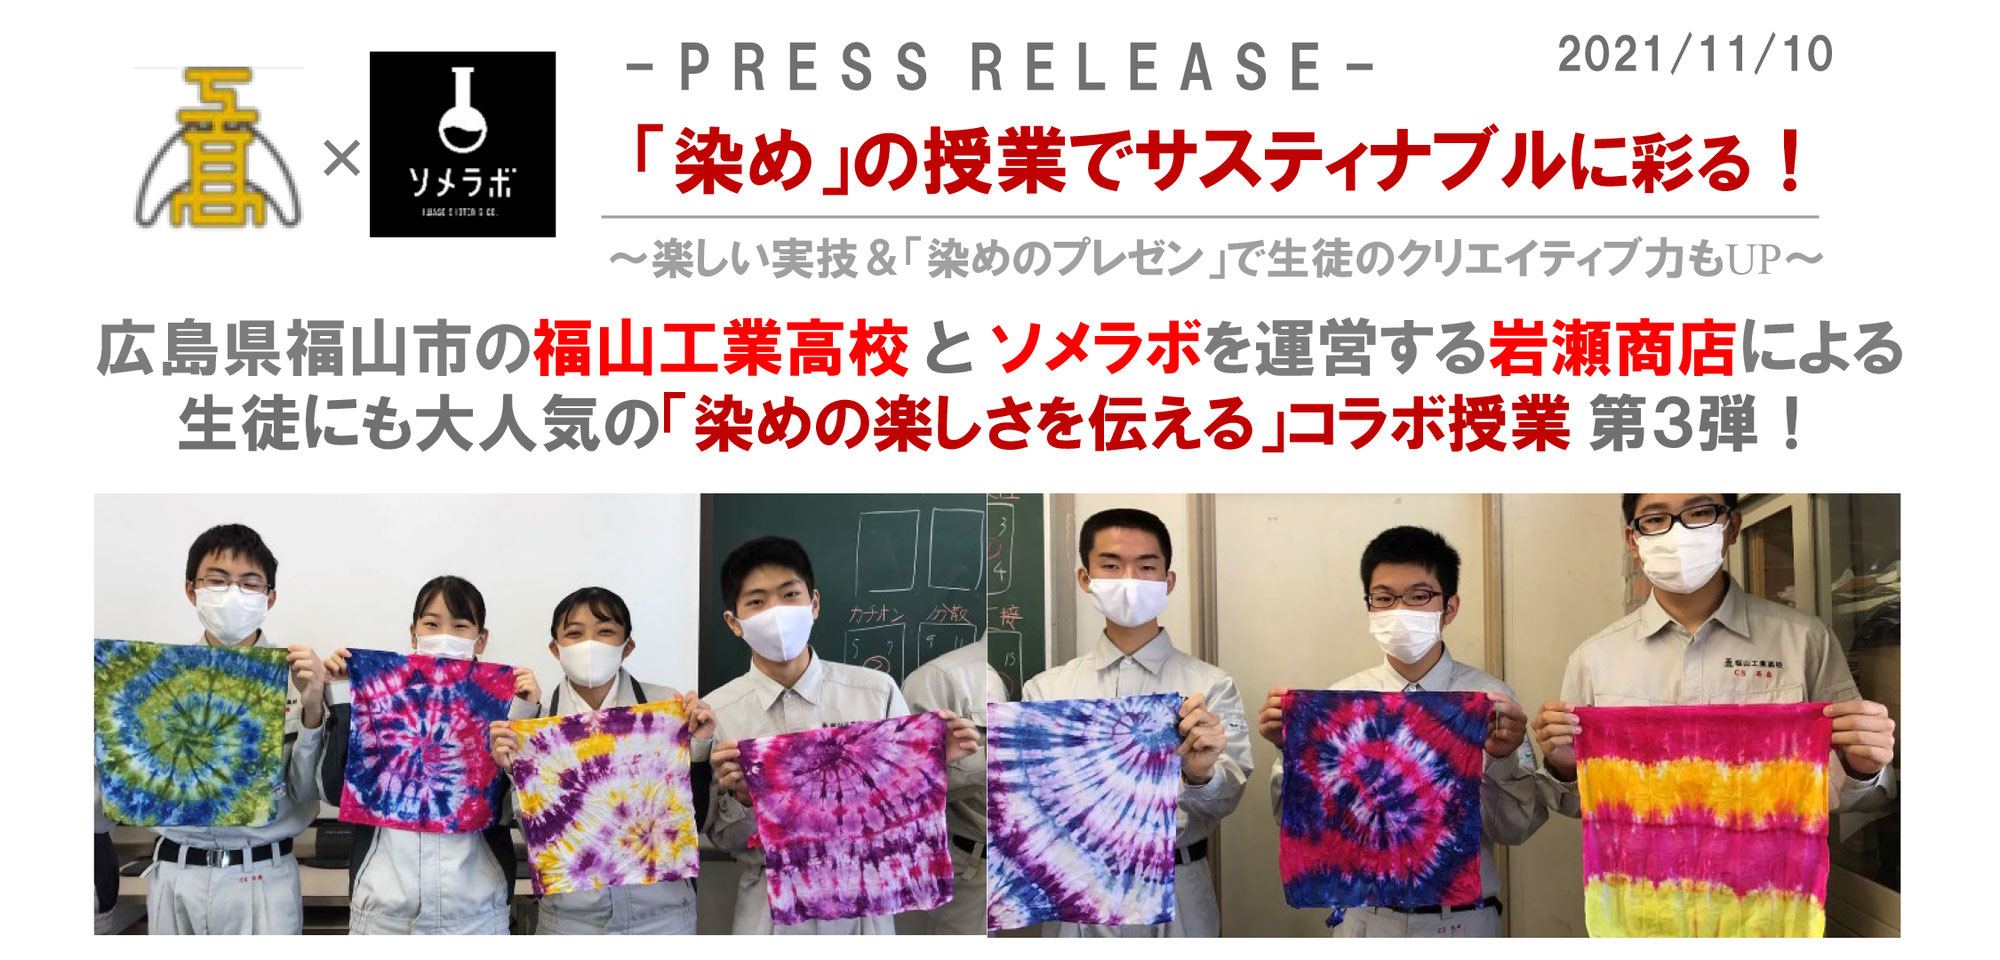 福山工業高校で「染めの楽しさを伝える」授業の開催のお知らせ